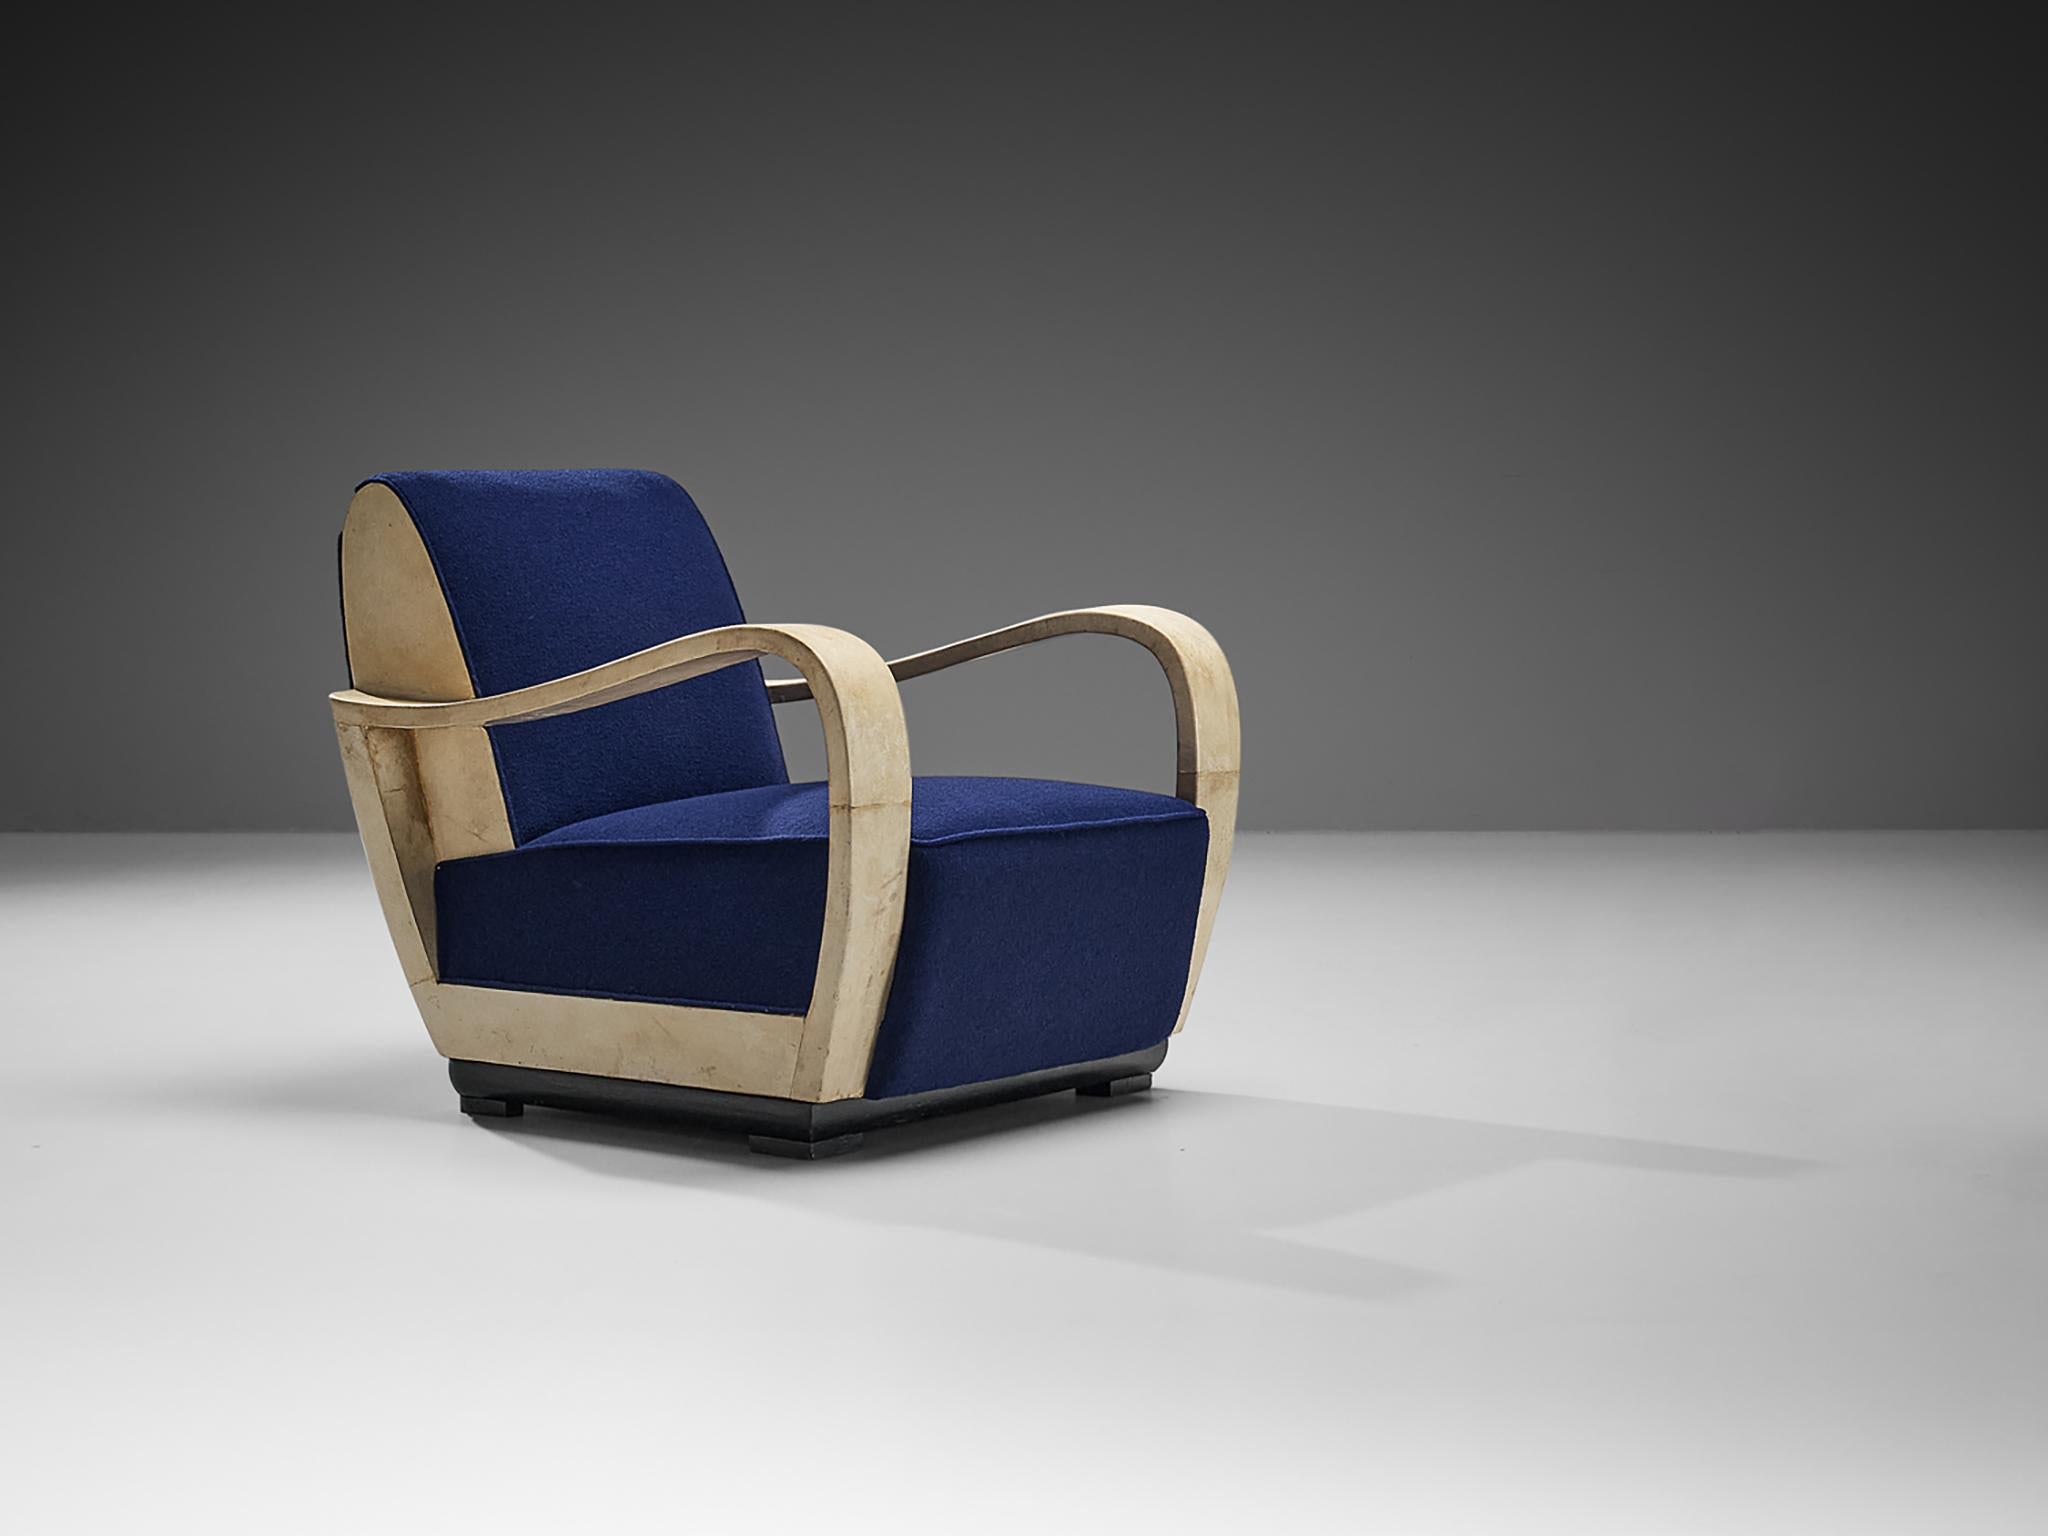 Valzania, chaise longue, parchemin, tissu, bois laqué, Italie, vers 1940

Ce fauteuil exquis a été fabriqué par Valzania vers 1940. Cette chaise est une pièce unique, tant par son design que par l'utilisation des matériaux. Le parchemin est fabriqué